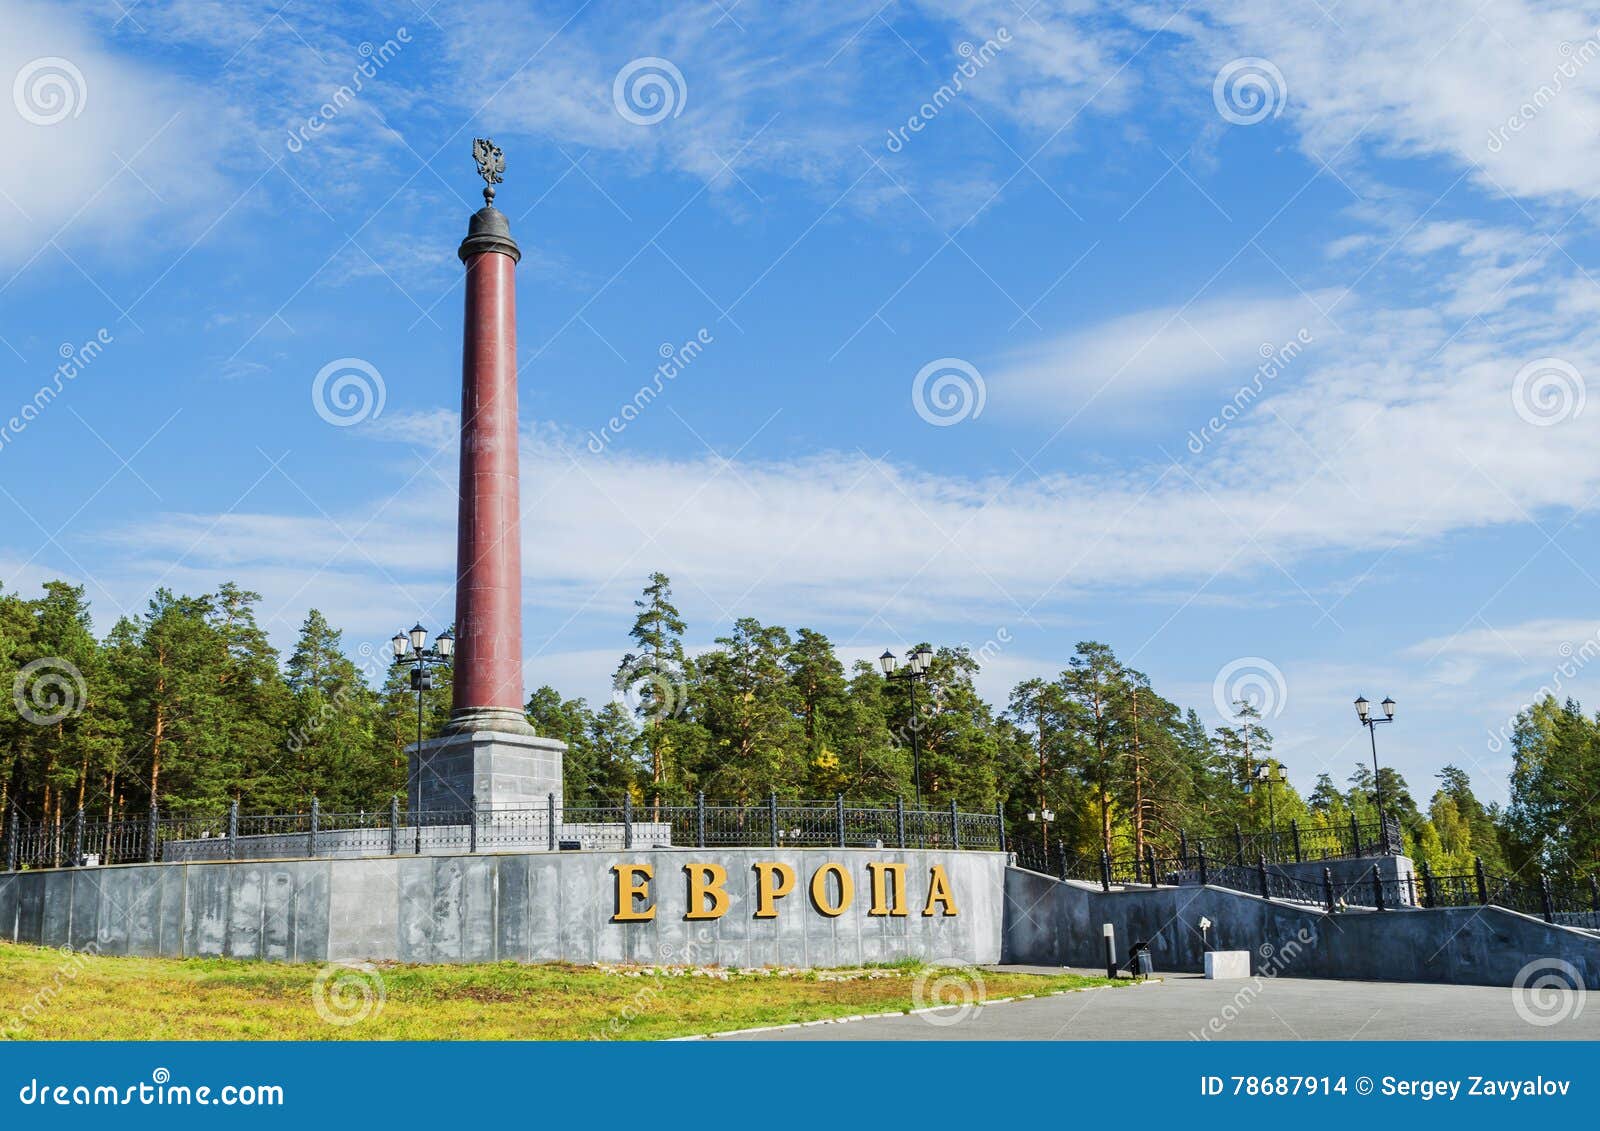 el-monumento-en-la-frontera-de-europa-y-de-asia-imagen-de-archivo-editorial-imagen-de-azul